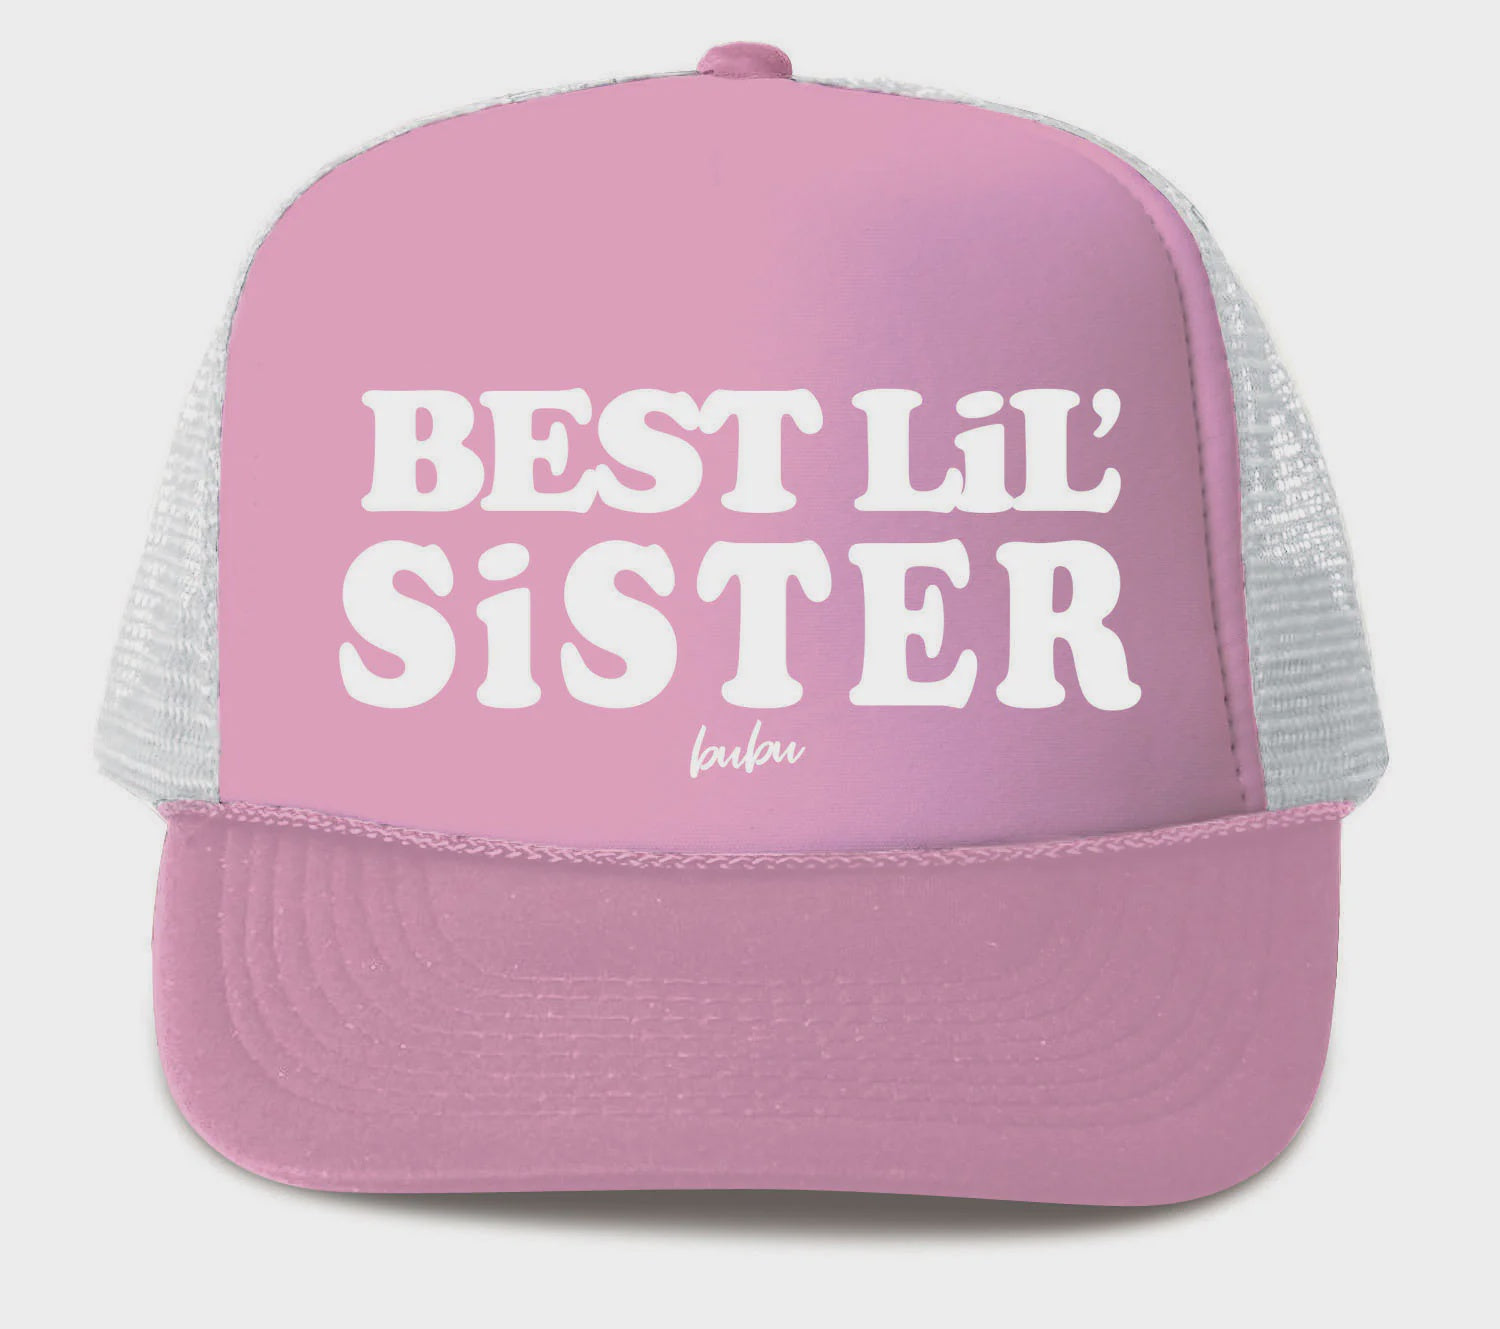 Best Lil Sister - Light Pink